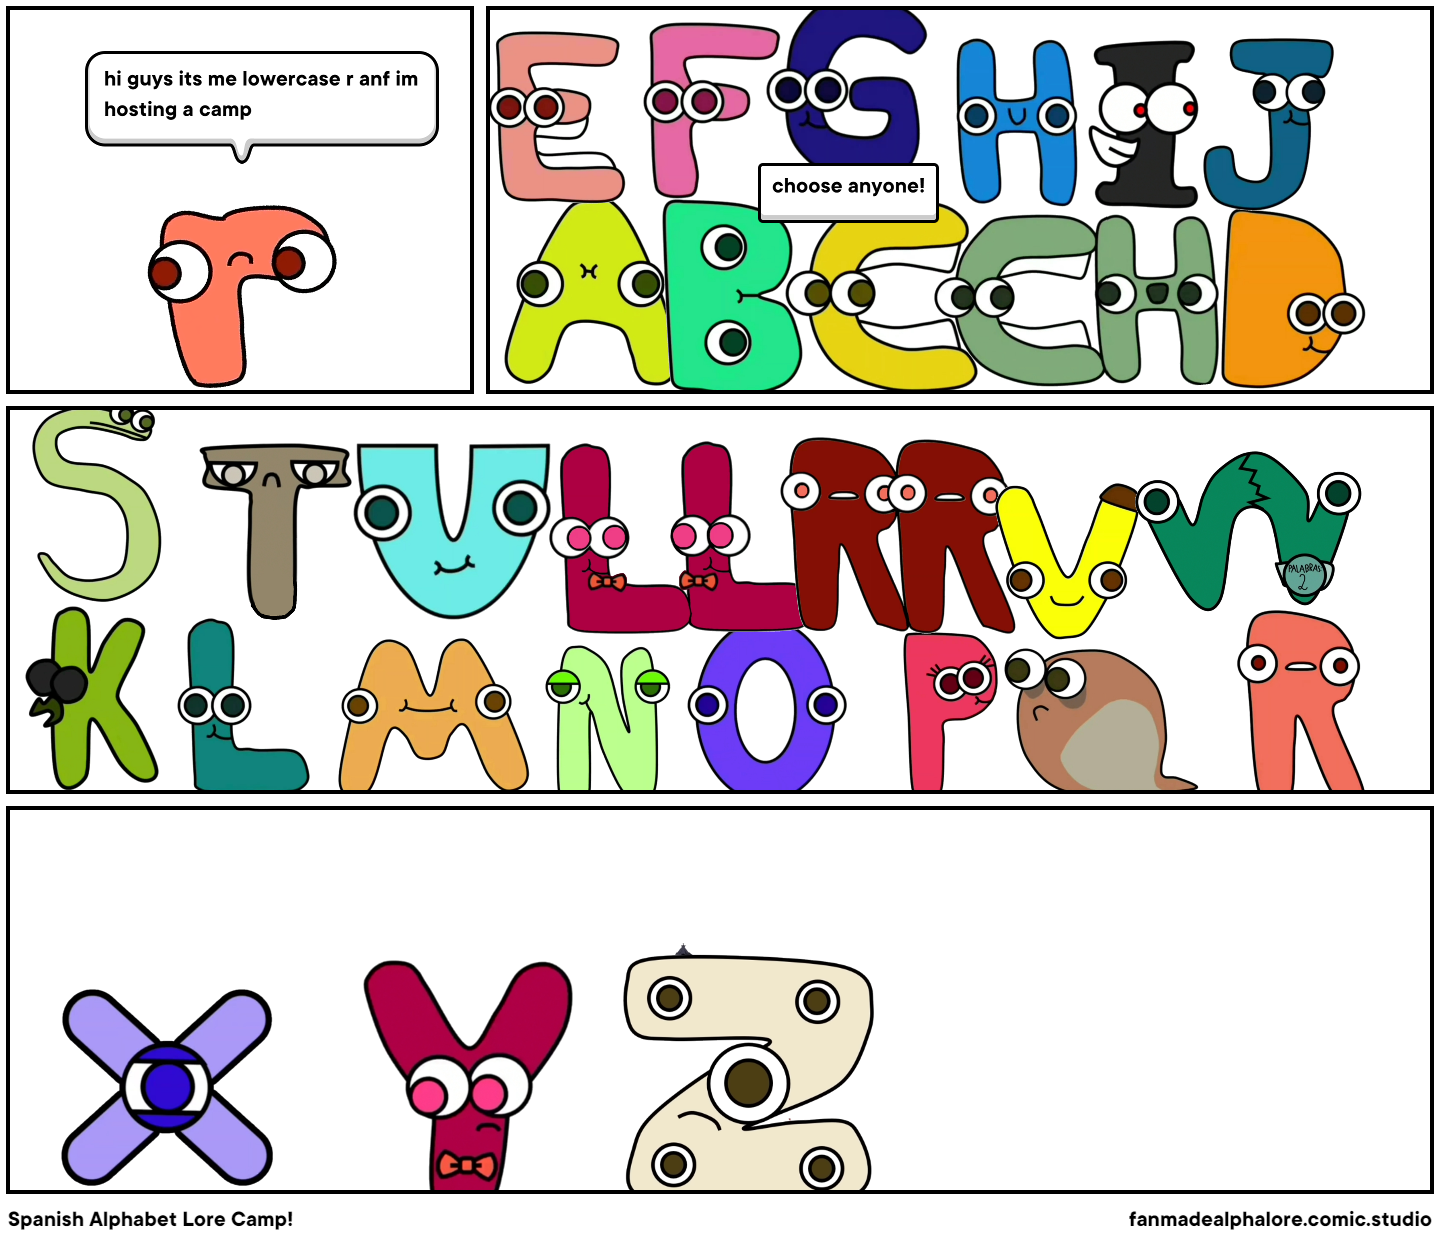 Spanish alphabet lore Q. - Comic Studio